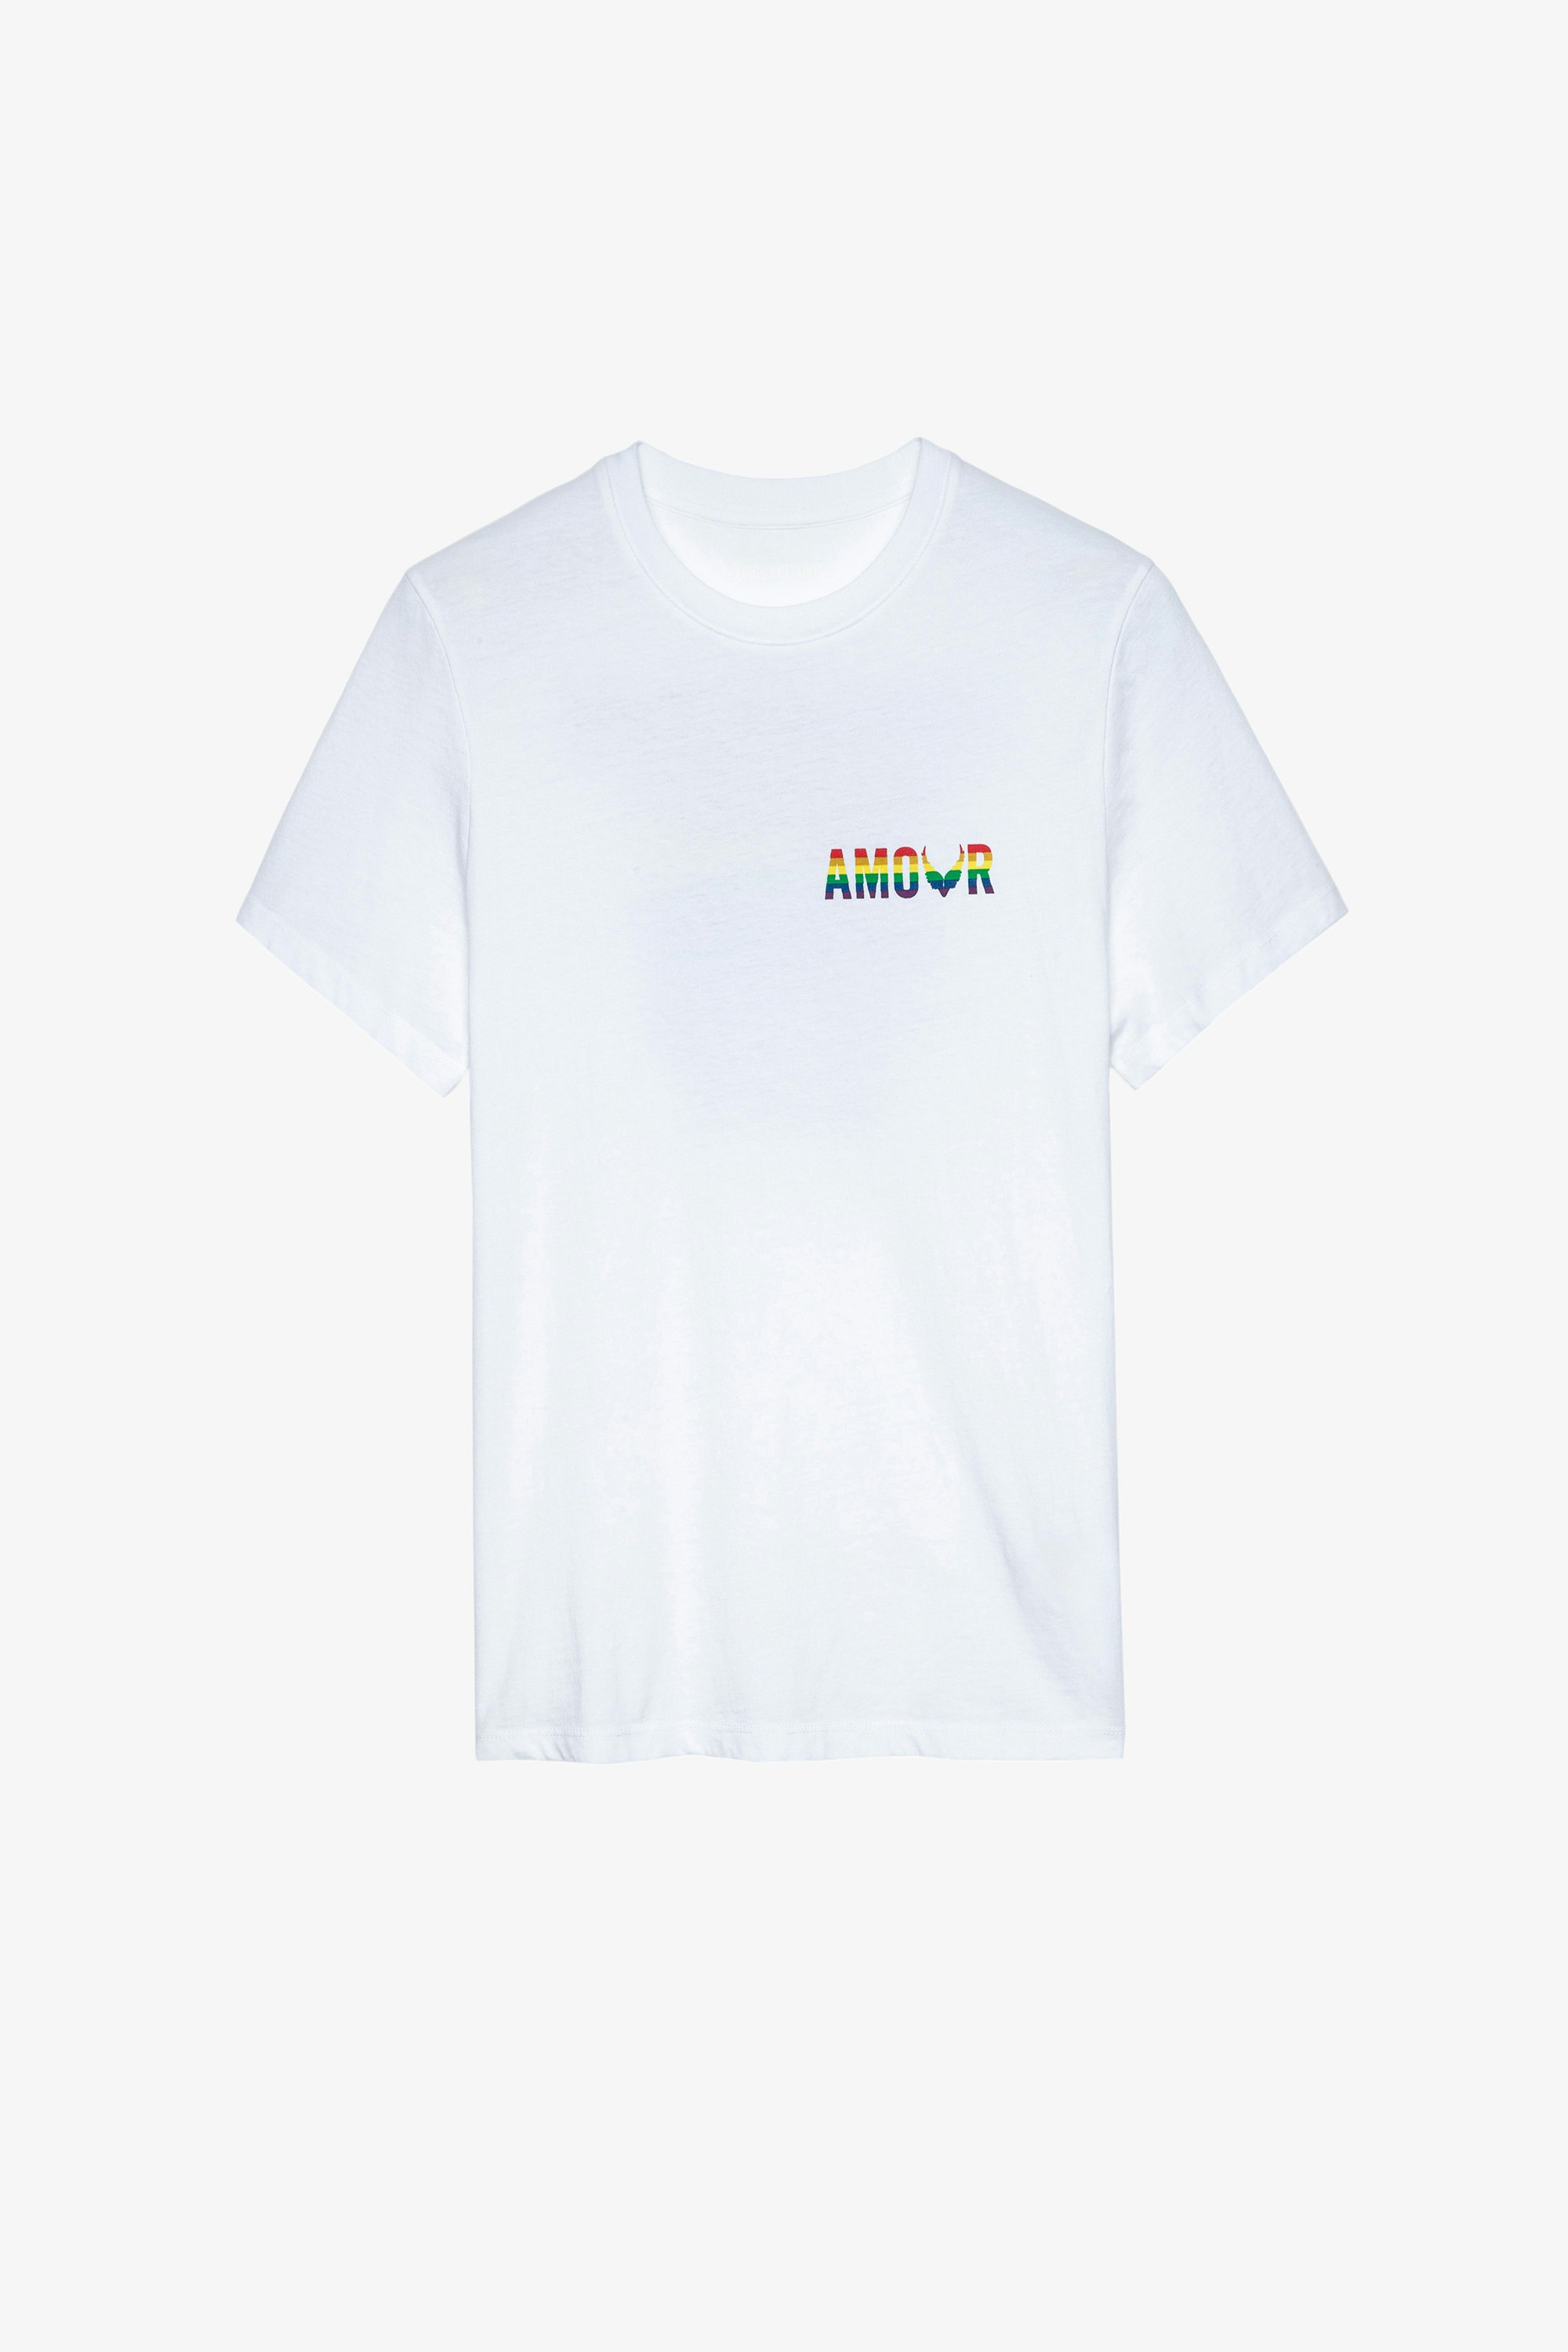 T-Shirt Tommy Amour Wings Damen-T-Shirt aus weißer Baumwolle mit mehrfarbigem Amour-Aufdruck